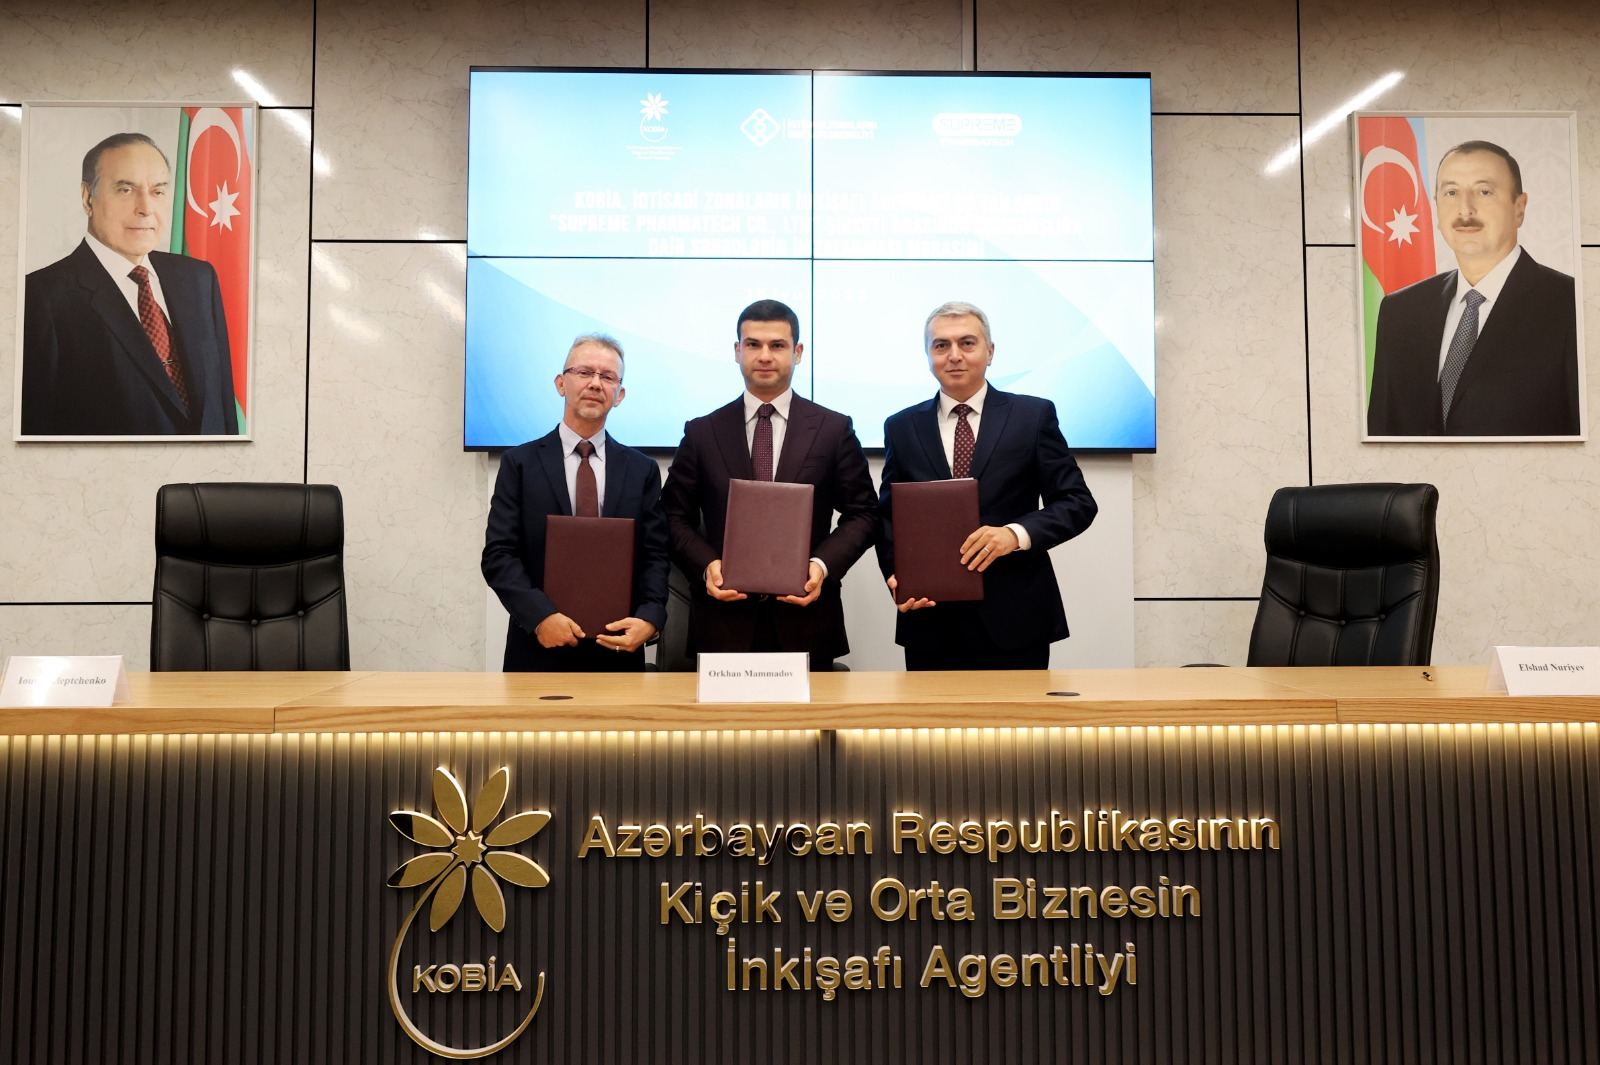 Подписан Меморандум о взаимопонимании и сотрудничестве между KOBIA, IZIA и тайской компанией (ФОТО)